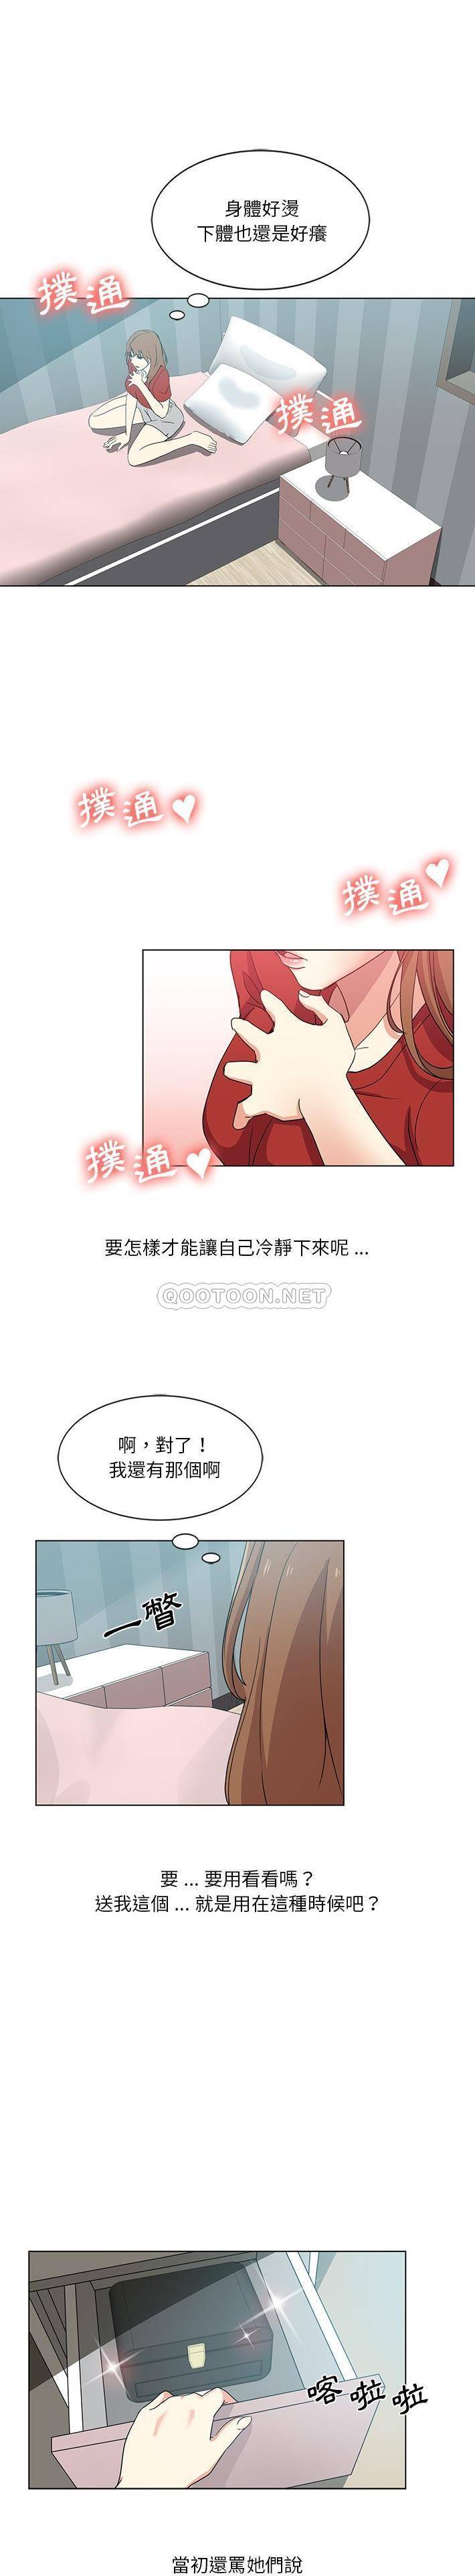 韩国污漫画 危險純友誼 第5话 8